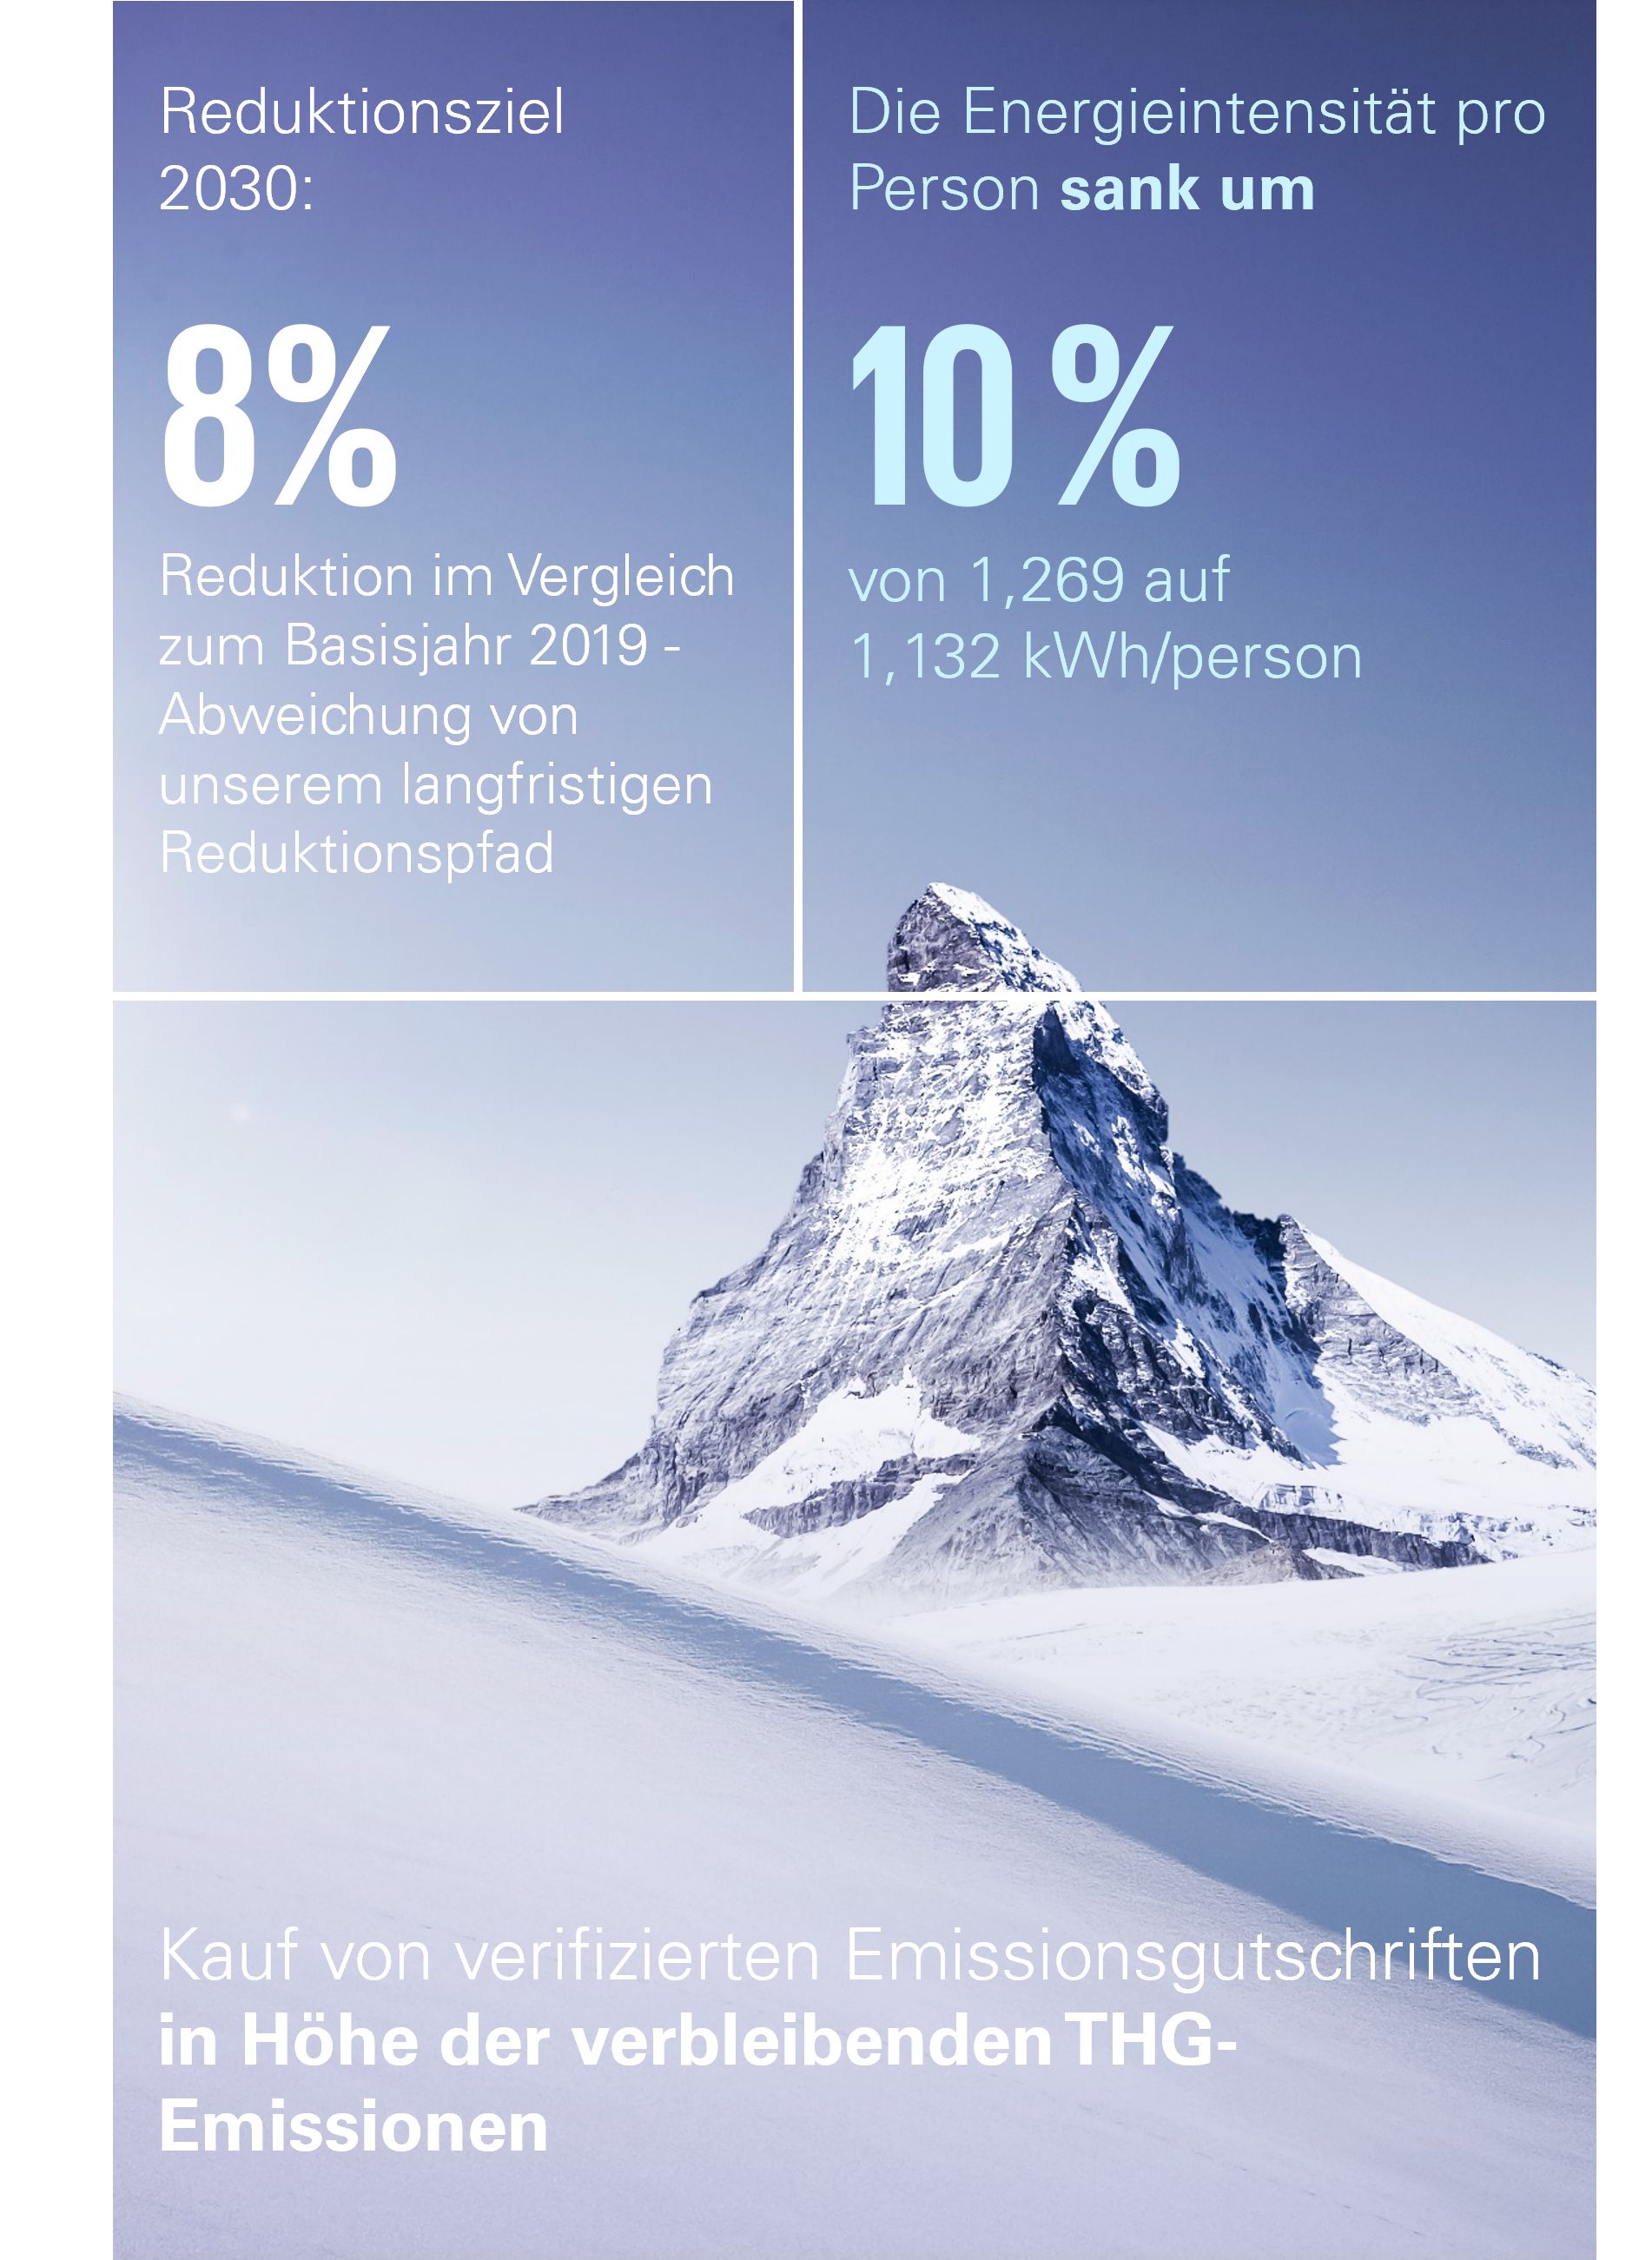 KPMG Switzerland Impact Plan 2023 - "our planet"